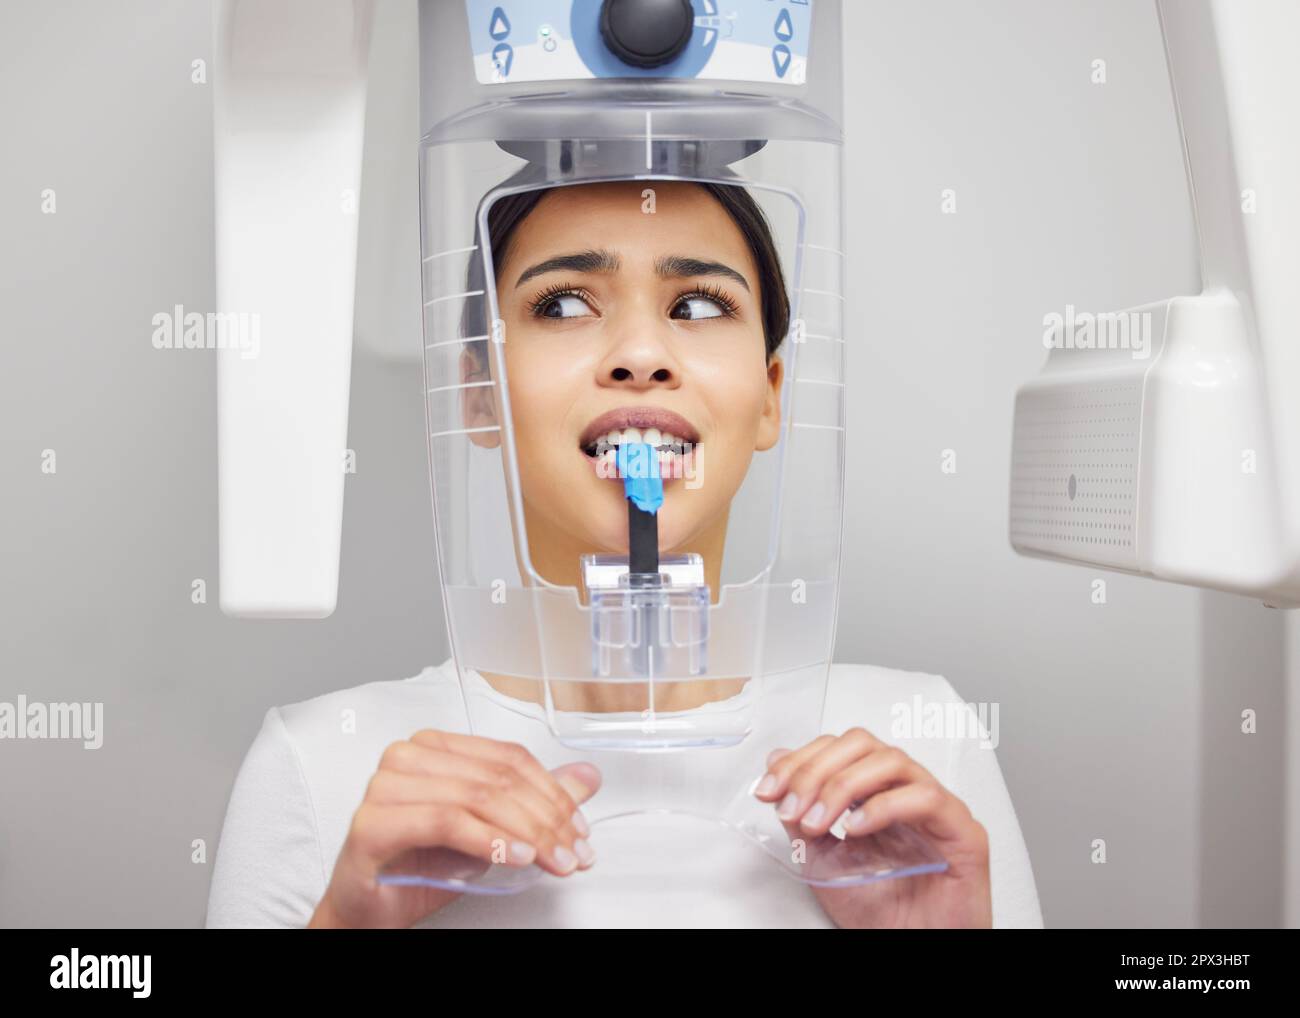 Perché questa cosa fa quel rumore? una giovane donna che guarda ansiosa mentre si utilizza una macchina a raggi x in un dentista ufficio Foto Stock